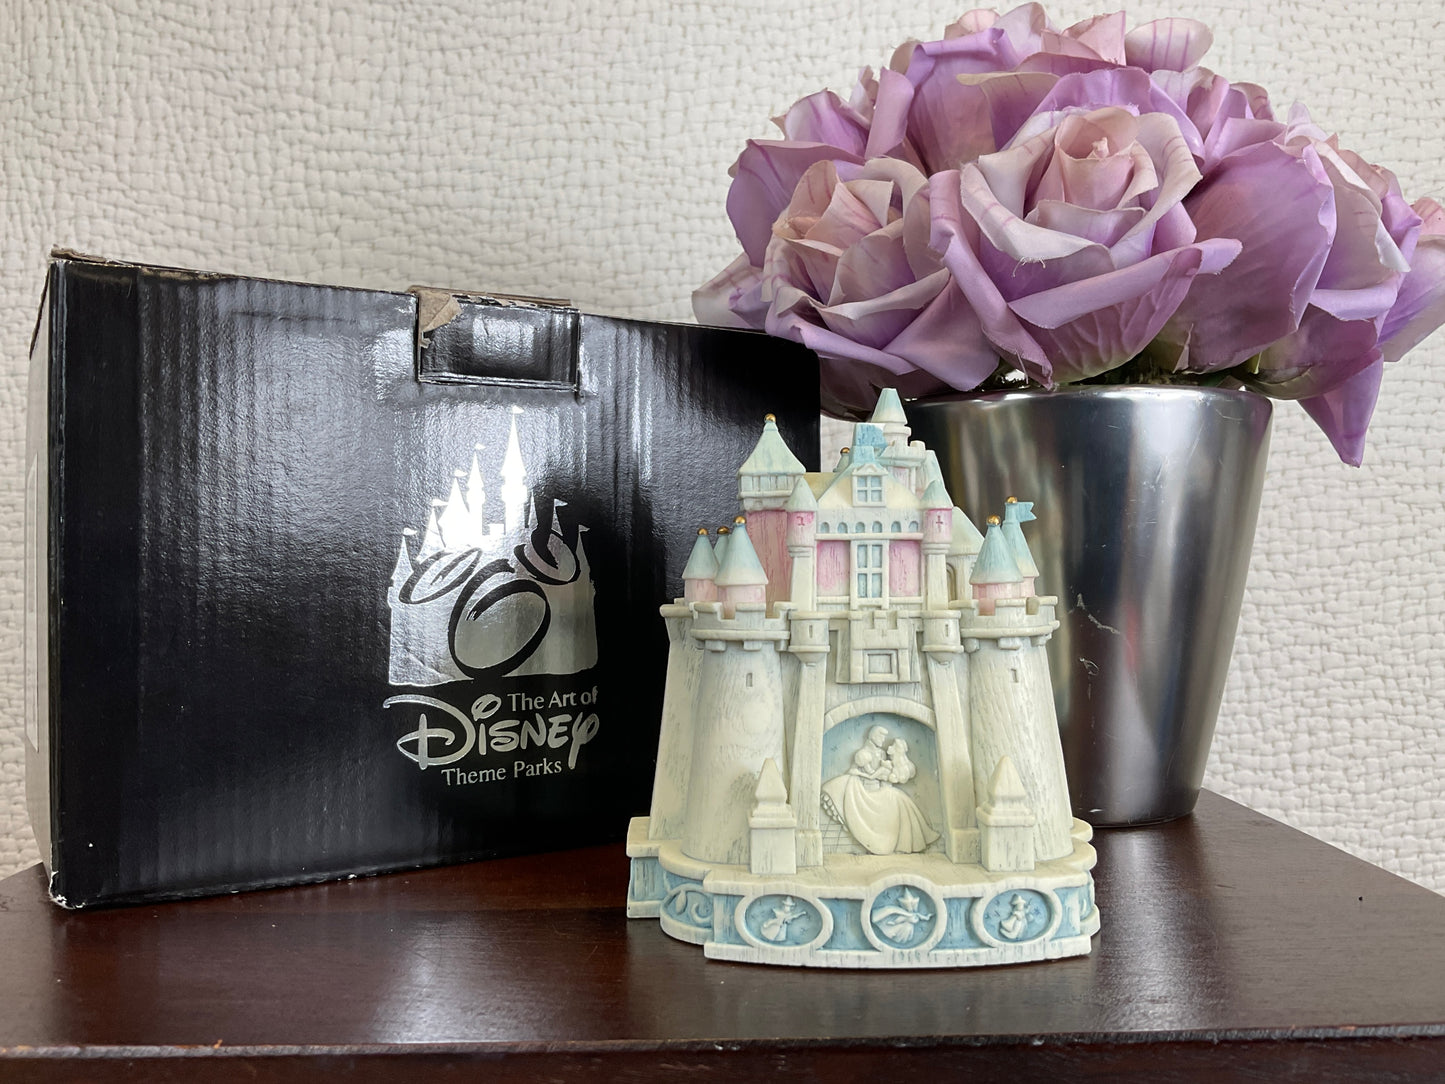 2011 Disneyland Sleeping Beauty Castle Trinket Box, Artist Robert Olszewski